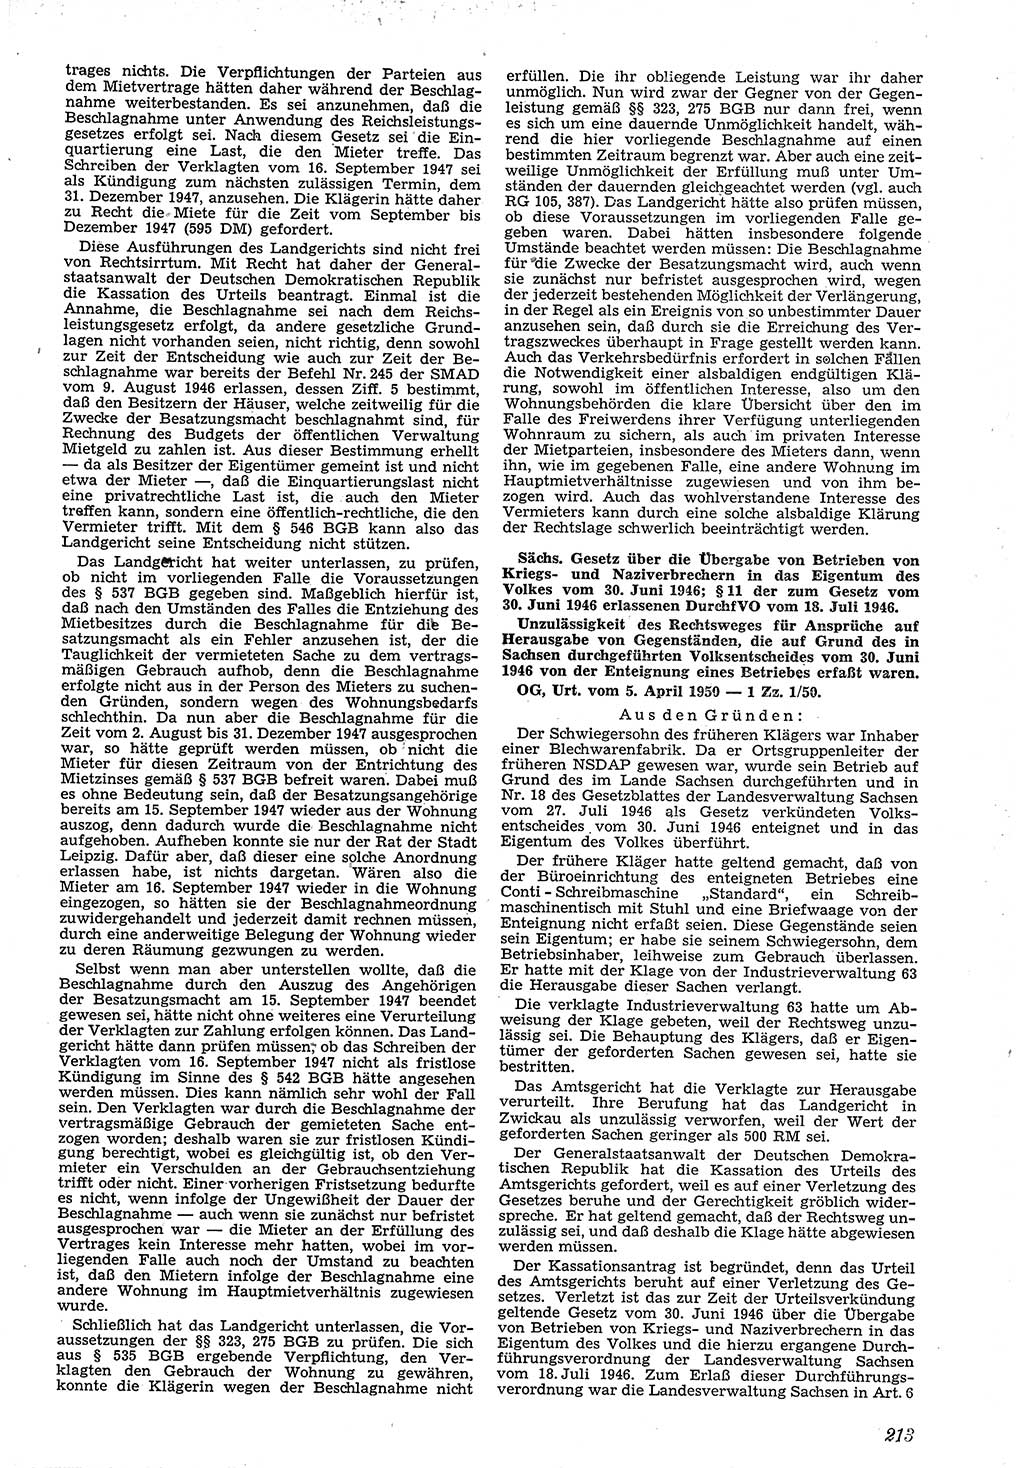 Neue Justiz (NJ), Zeitschrift für Recht und Rechtswissenschaft [Deutsche Demokratische Republik (DDR)], 4. Jahrgang 1950, Seite 213 (NJ DDR 1950, S. 213)